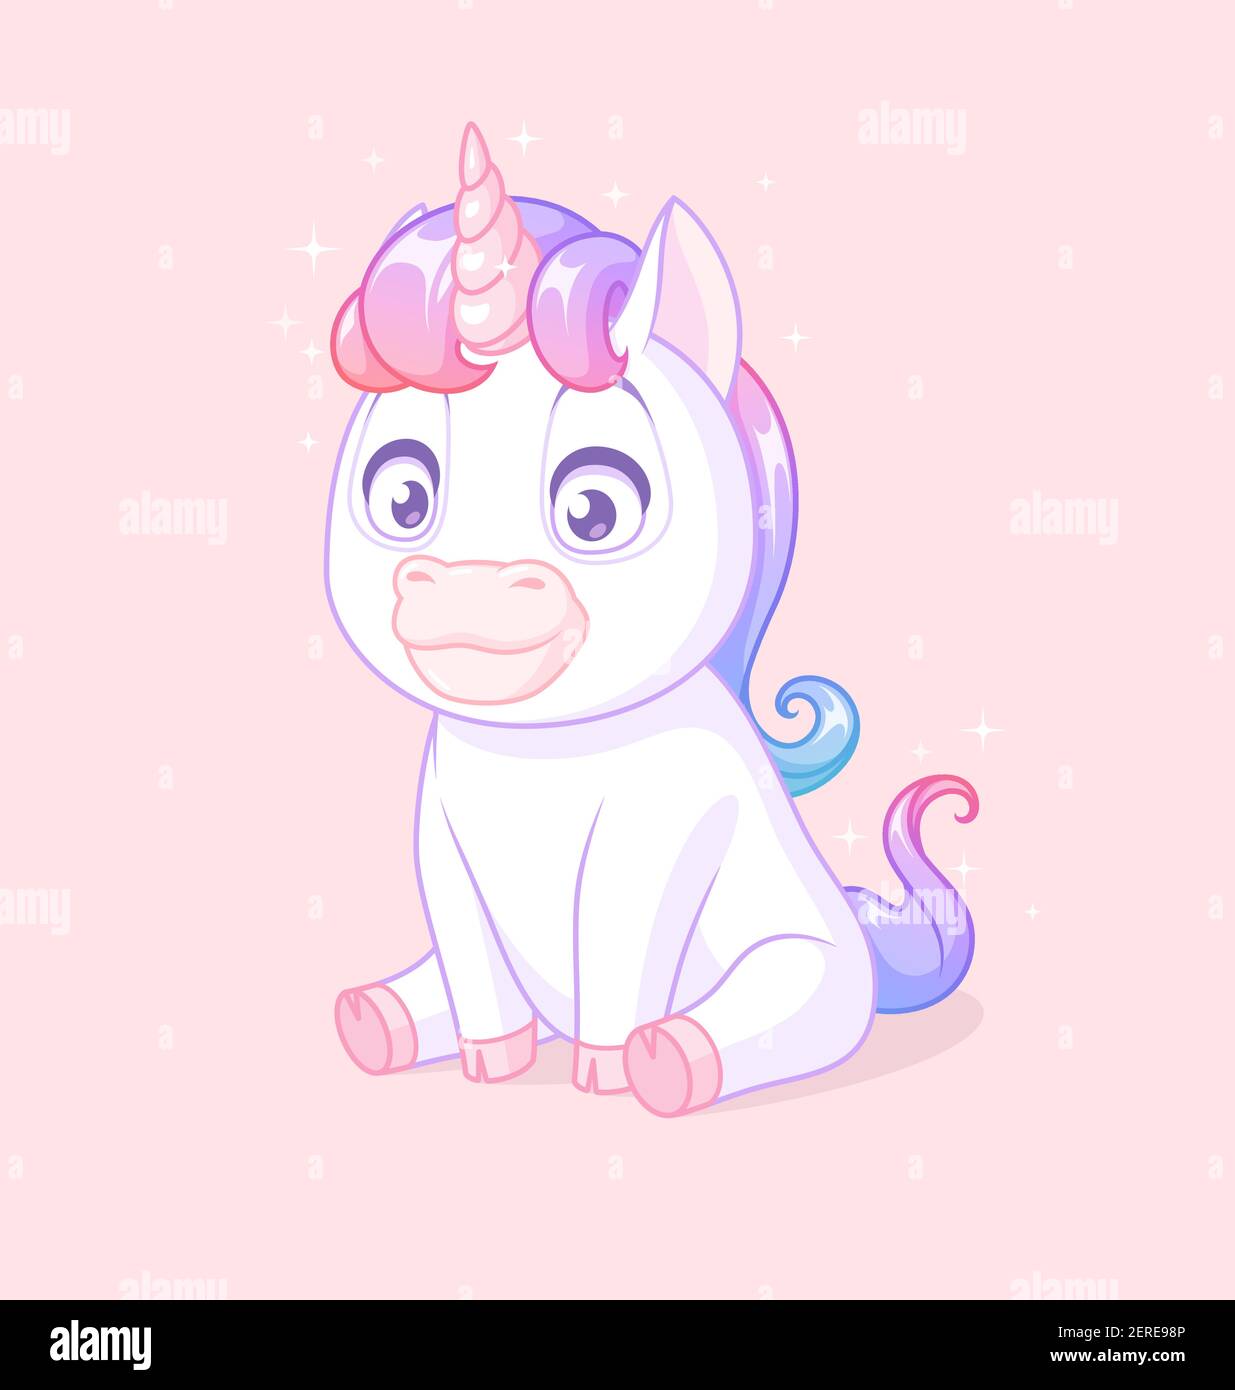 cute baby unicorns